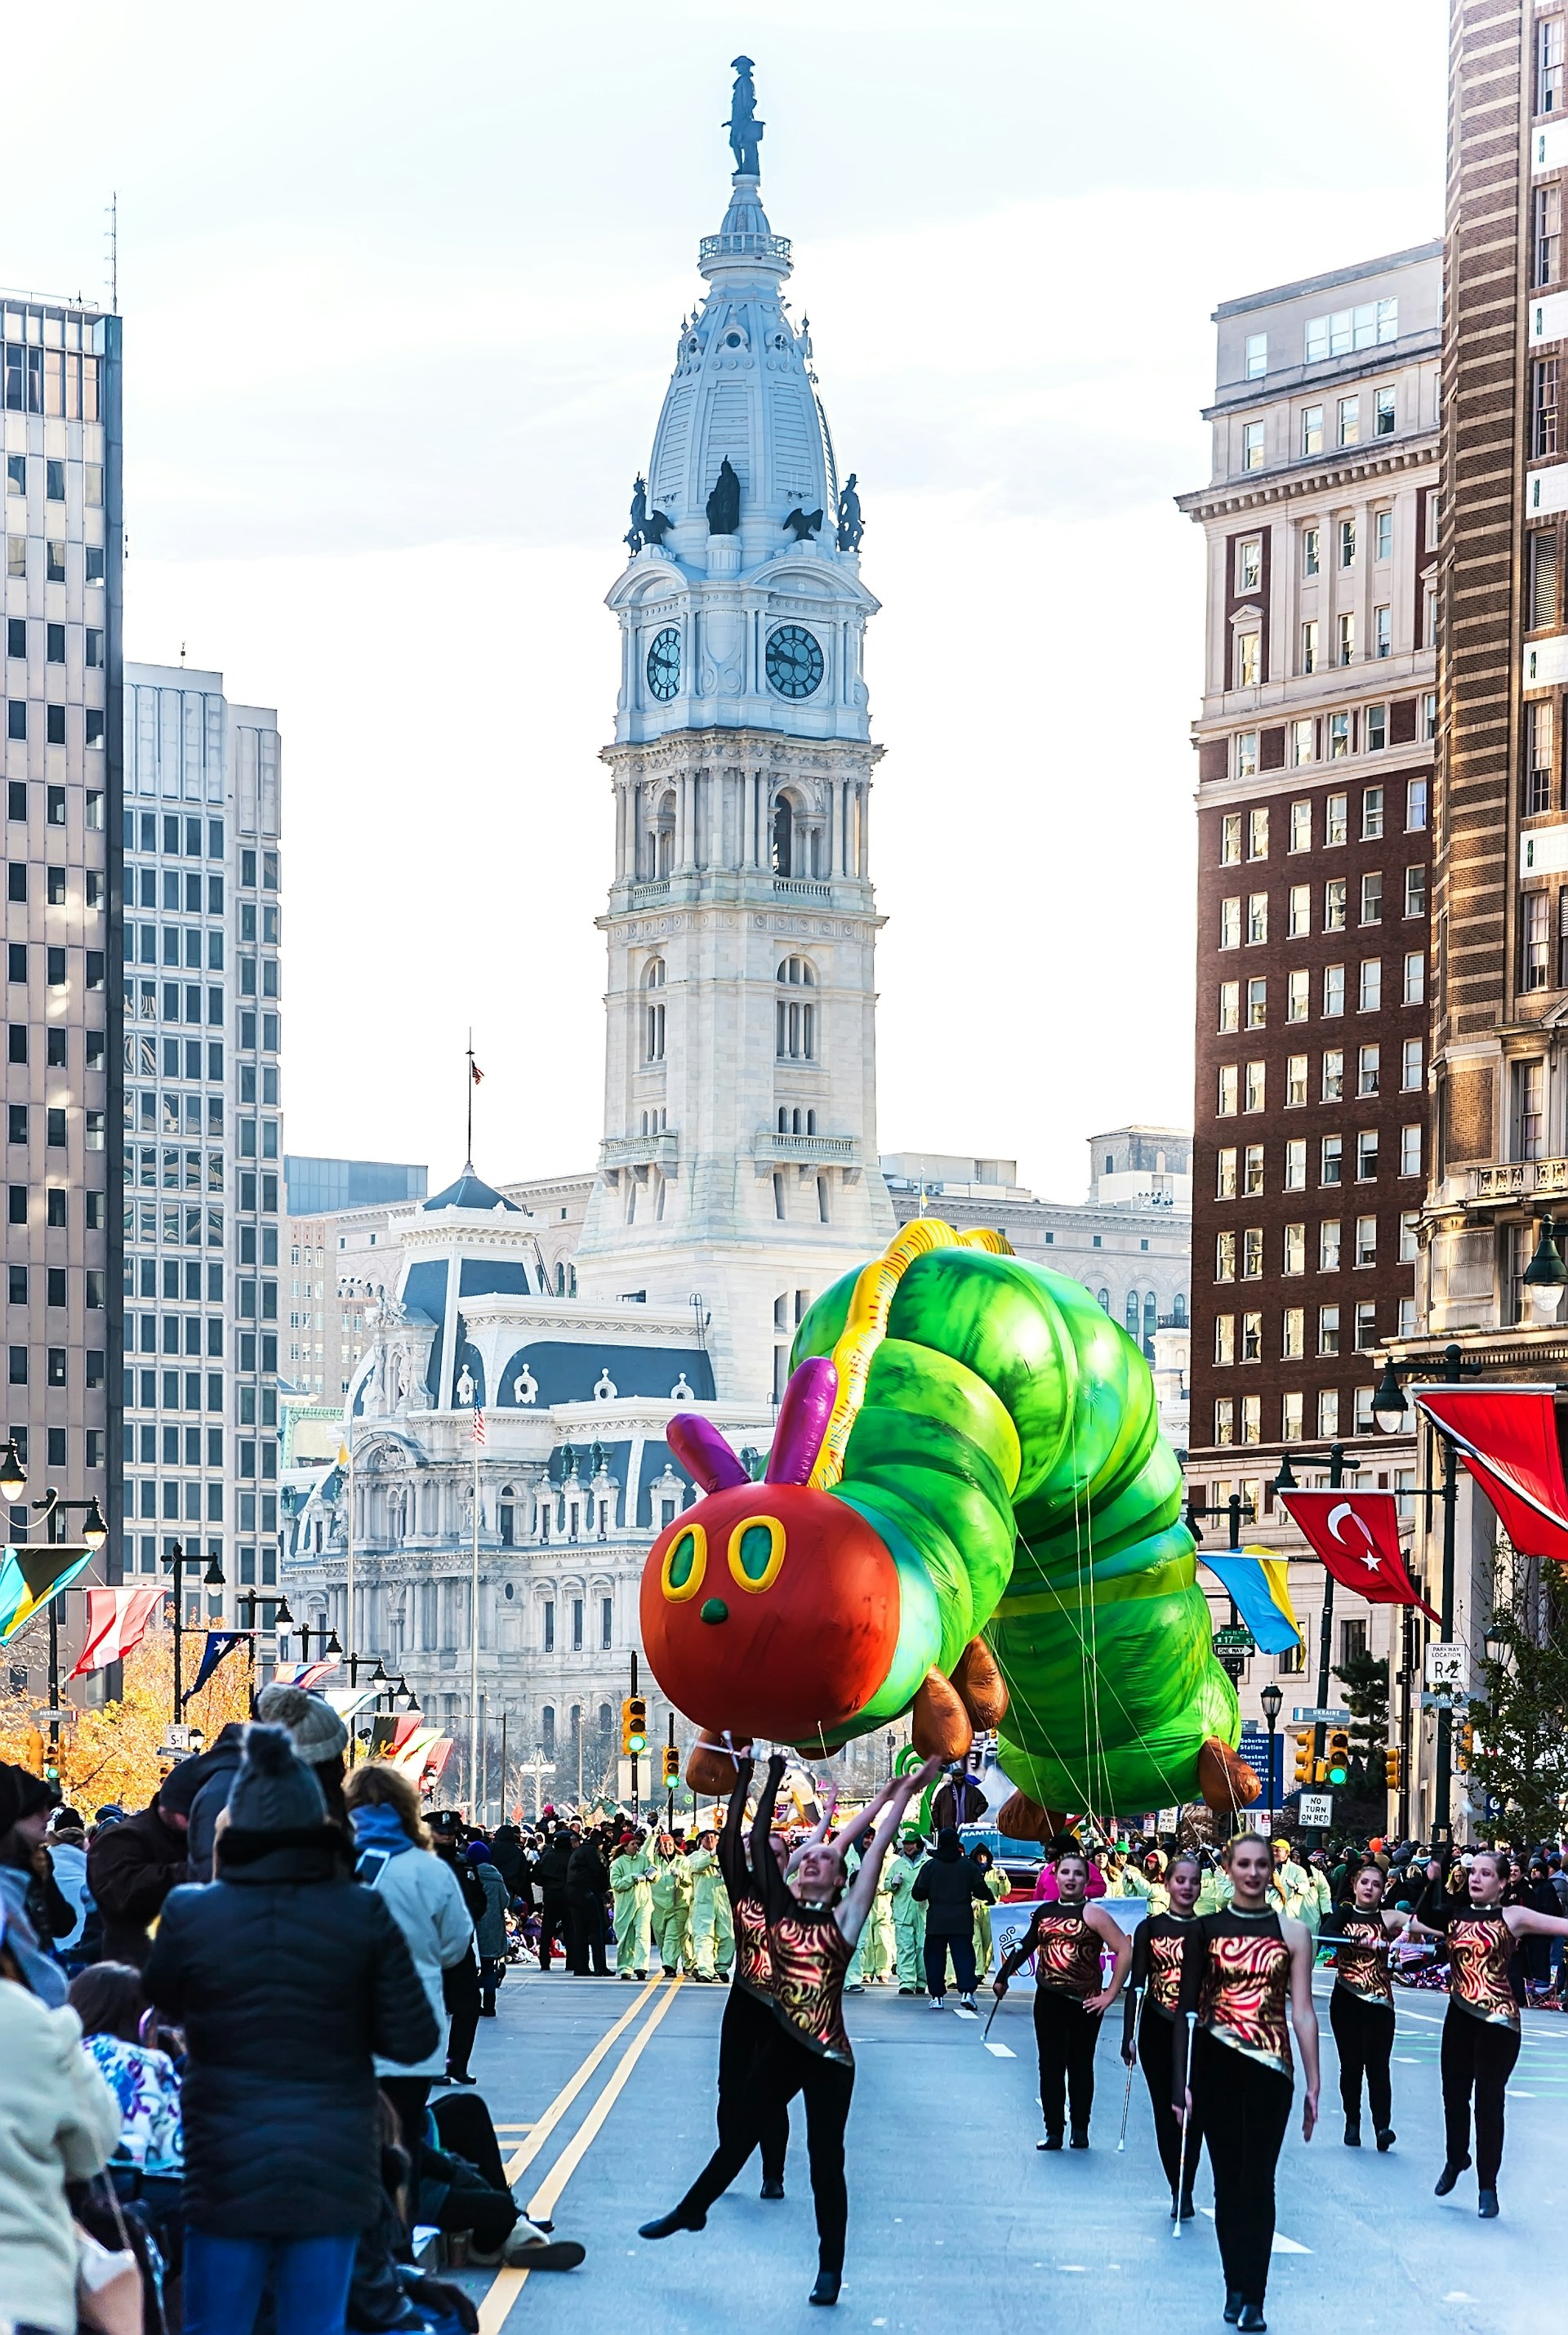 A Very Hungry Caterpillar balloon floats through Philadelphia, Pennsylvania